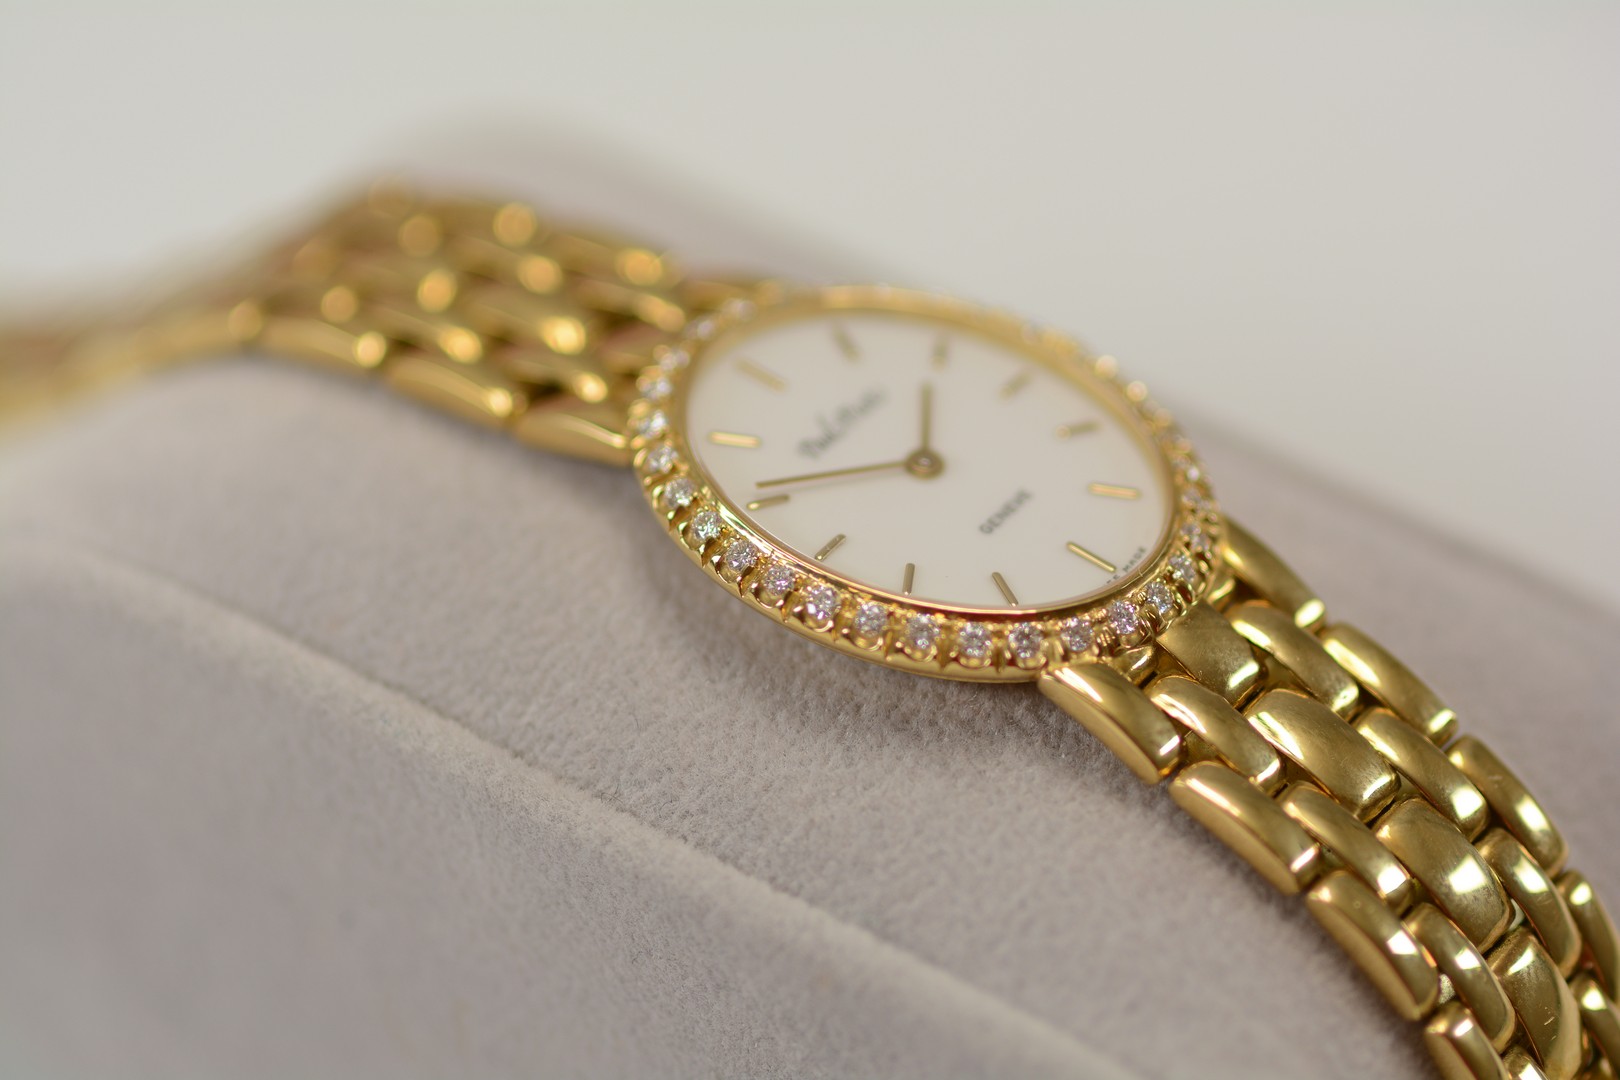 Paul Picot / Diamond - Lady's Yellow gold Wrist Watch - Image 9 of 16